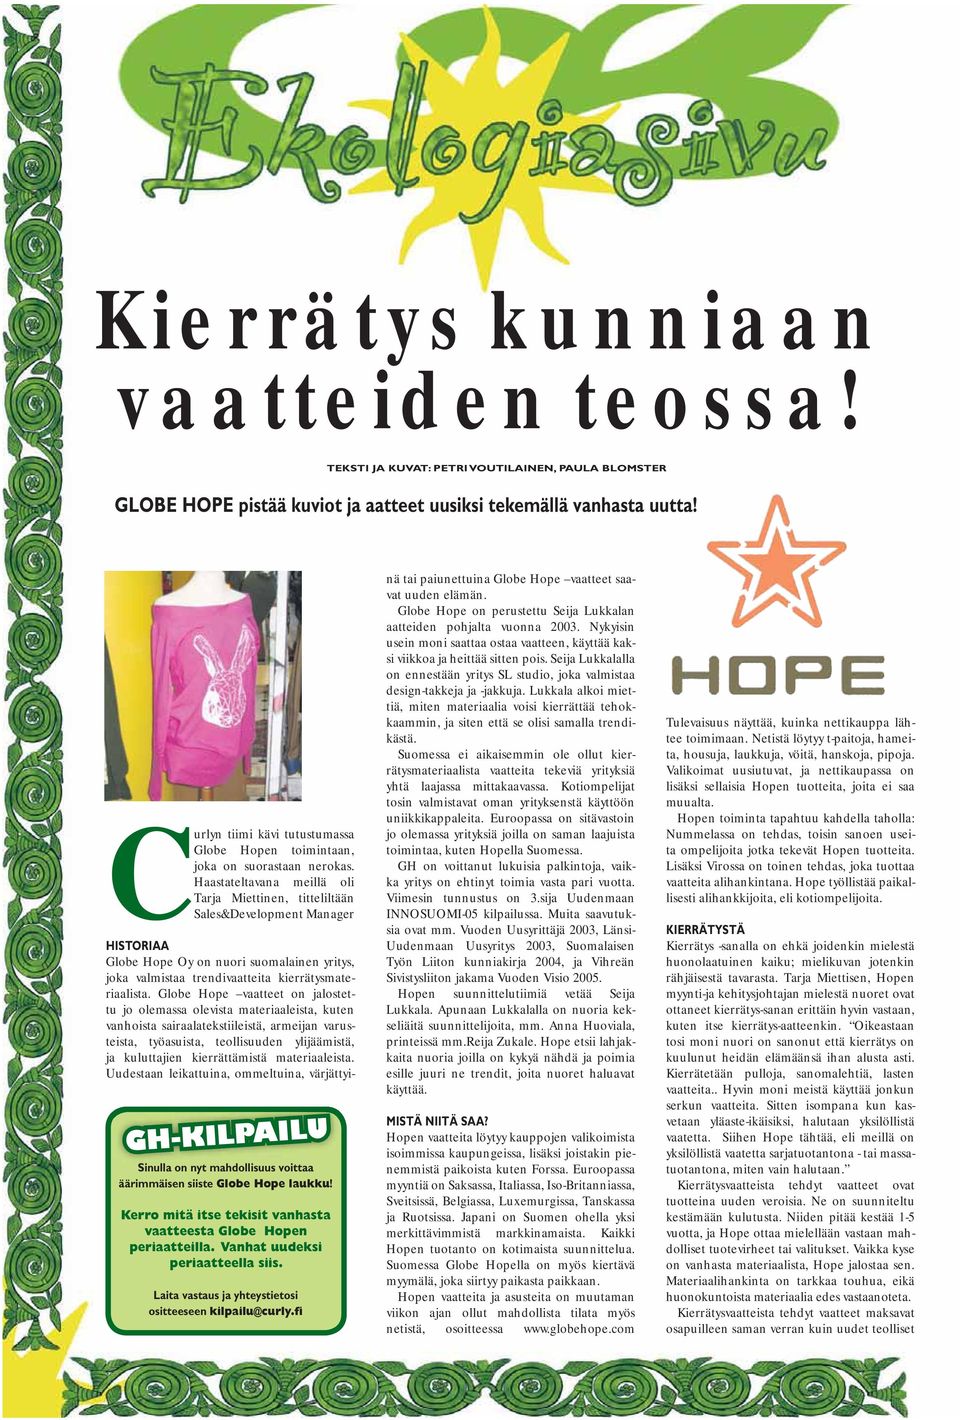 Haastateltavana meillä oli Tarja Miettinen, titteliltään Sales&Development Manager HISTORIAA Globe Hope Oy on nuori suomalainen yritys, joka valmistaa trendivaatteita kierrätysmateriaalista.